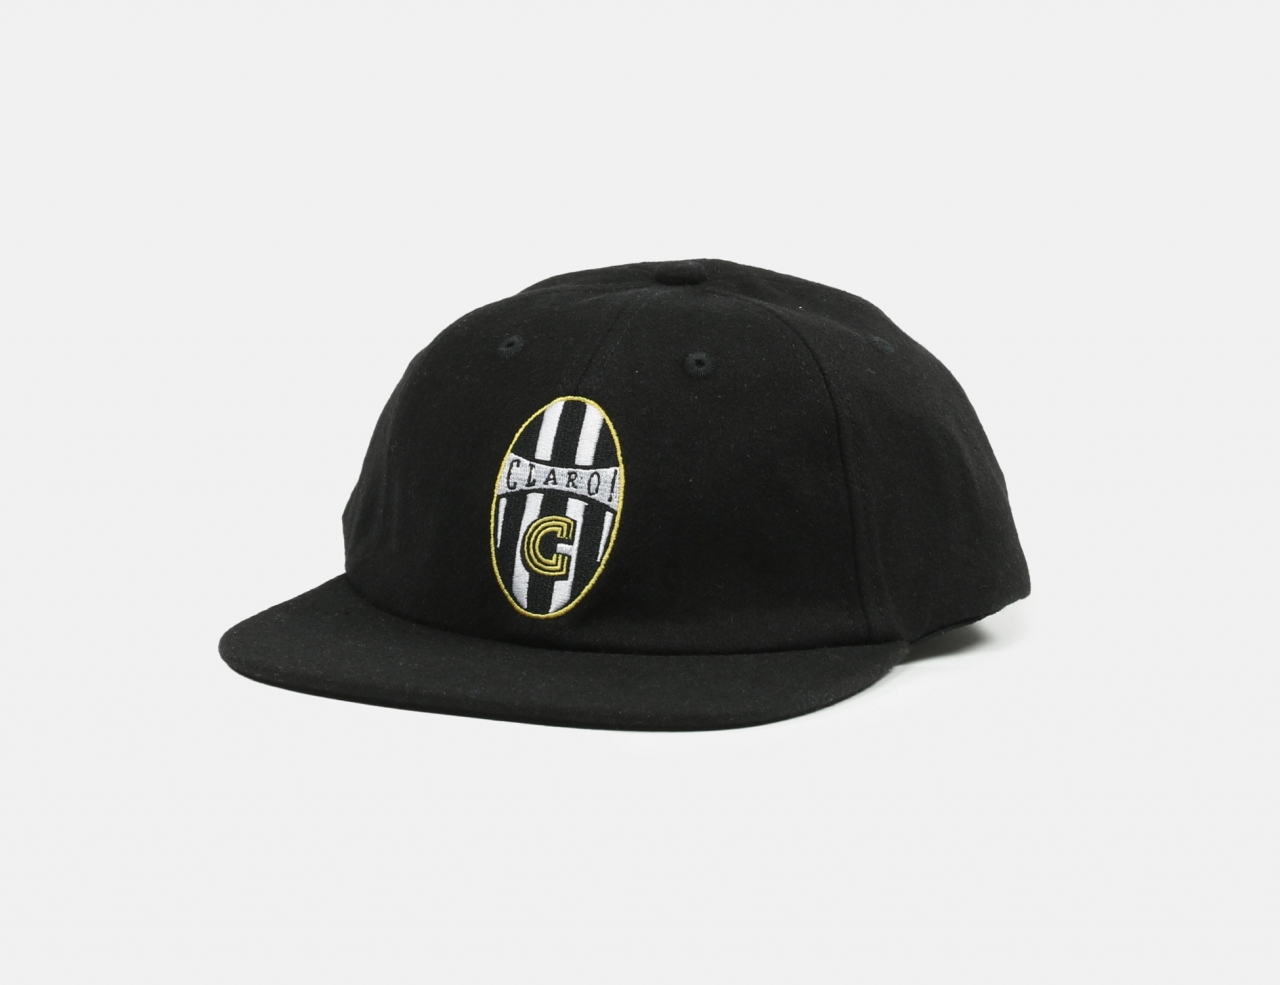 Claro! Caps Calcio Cap - Black